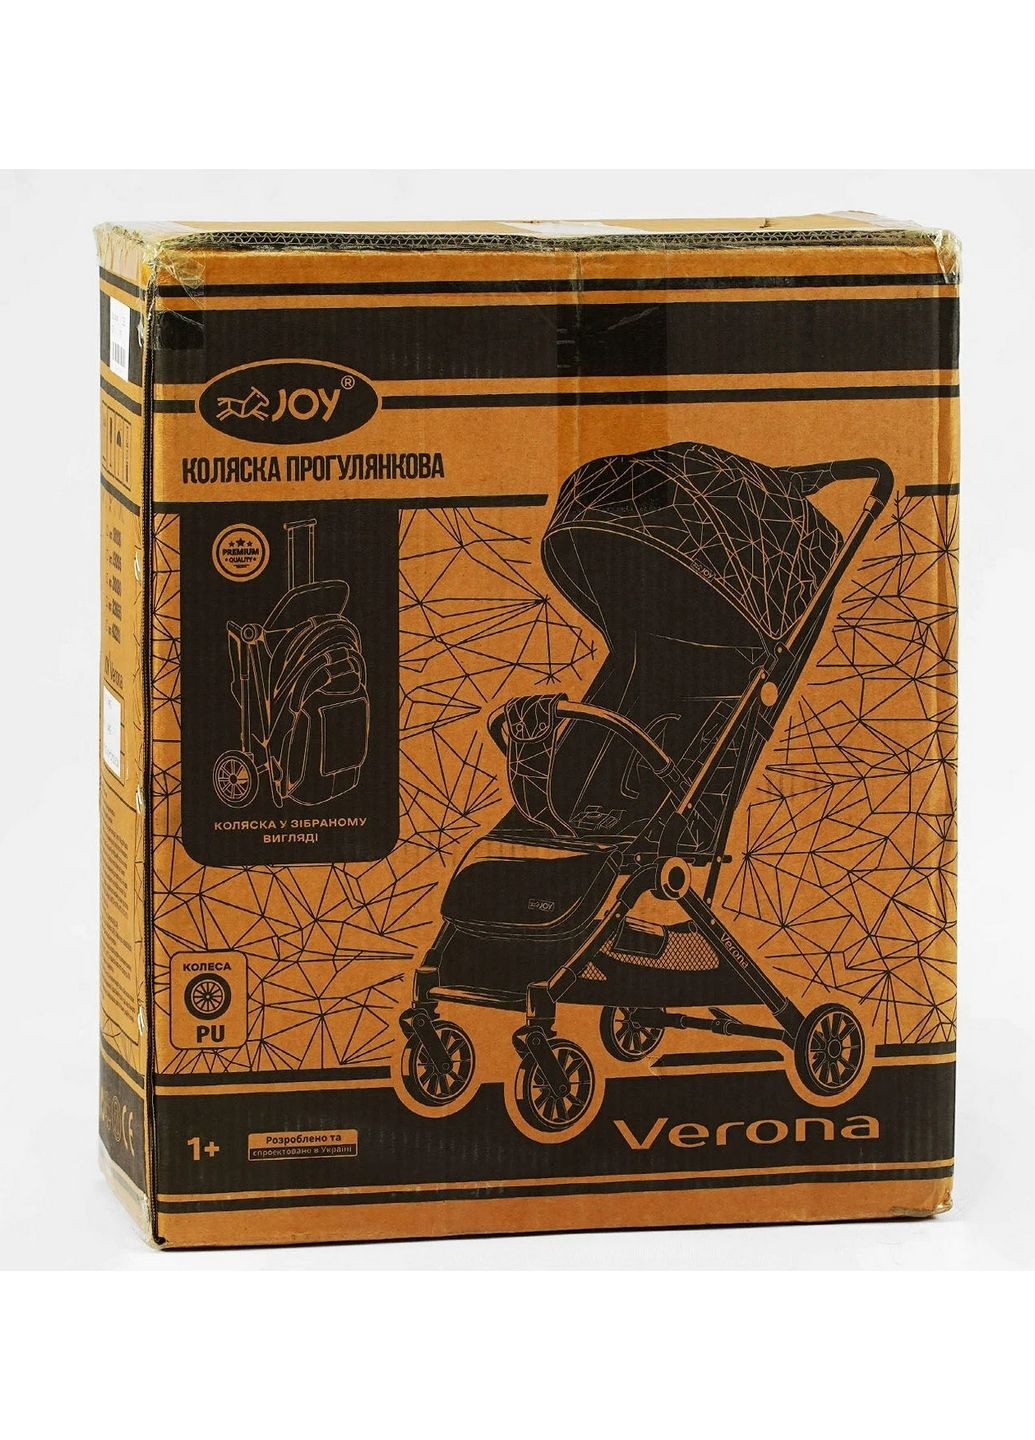 Коляска прогулянкова дитяча Verona телескопічна ручка Joy (288187107)